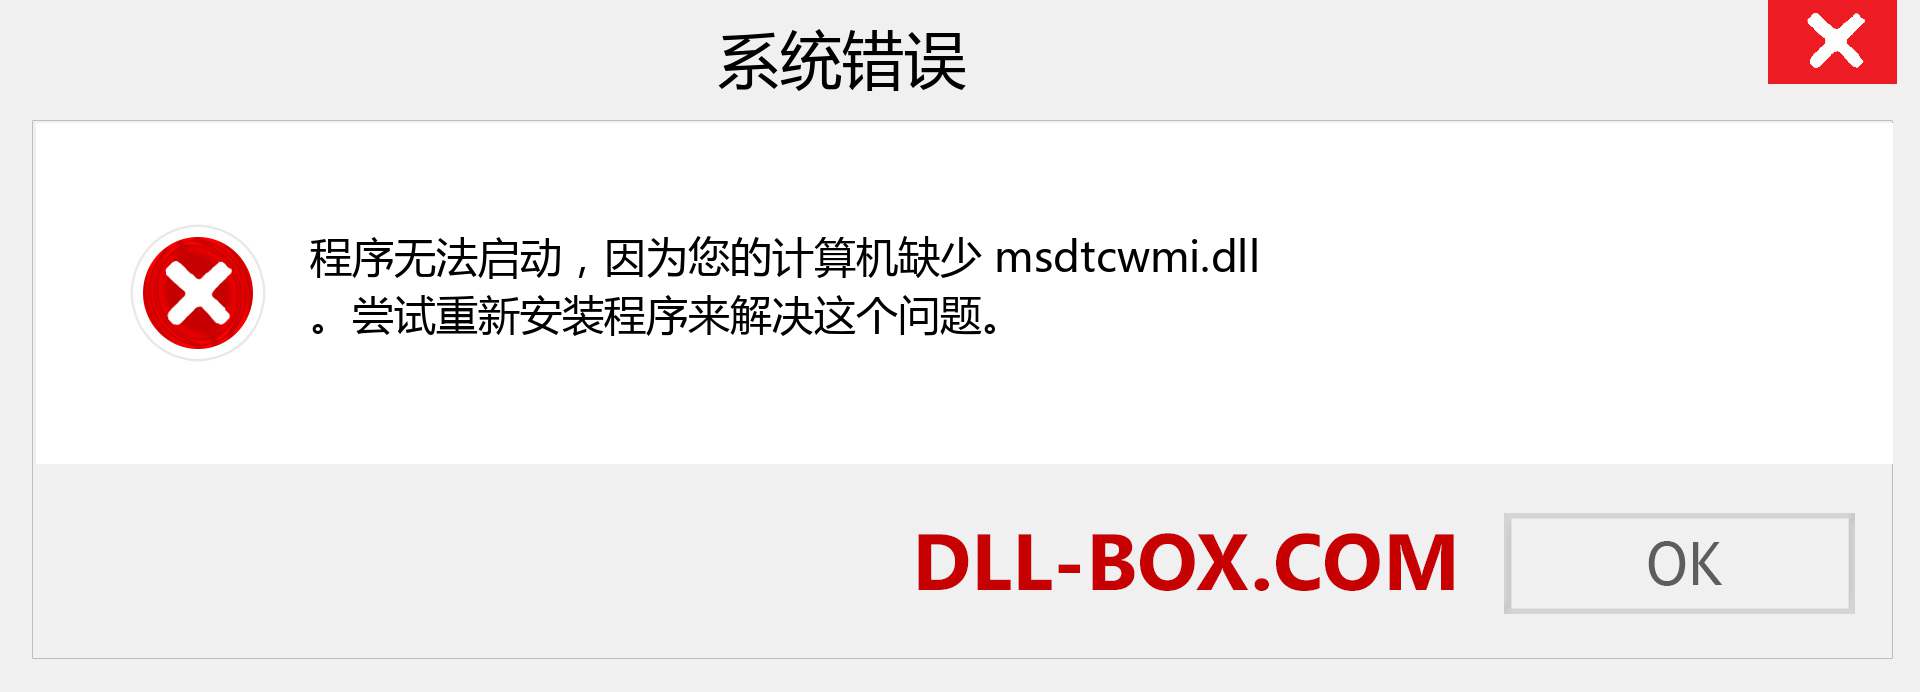 msdtcwmi.dll 文件丢失？。 适用于 Windows 7、8、10 的下载 - 修复 Windows、照片、图像上的 msdtcwmi dll 丢失错误